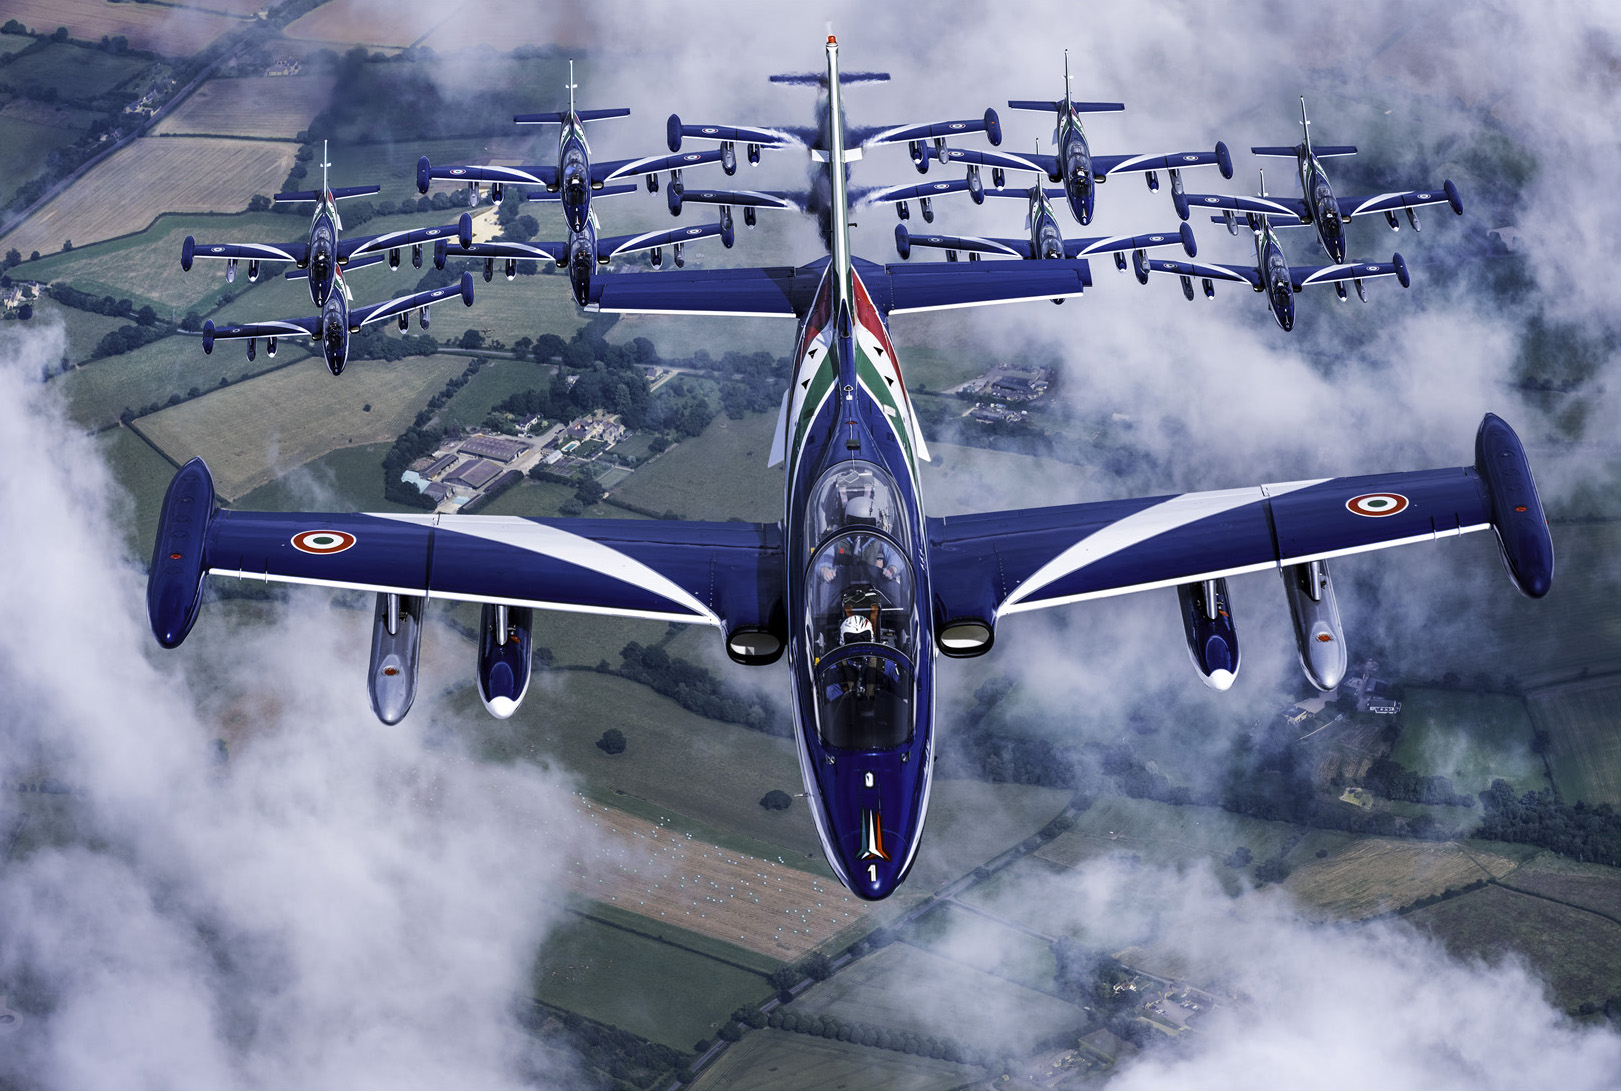 苍穹之舞-5 意大利空军三色箭飞行表演队十一机编队飞行.jpg